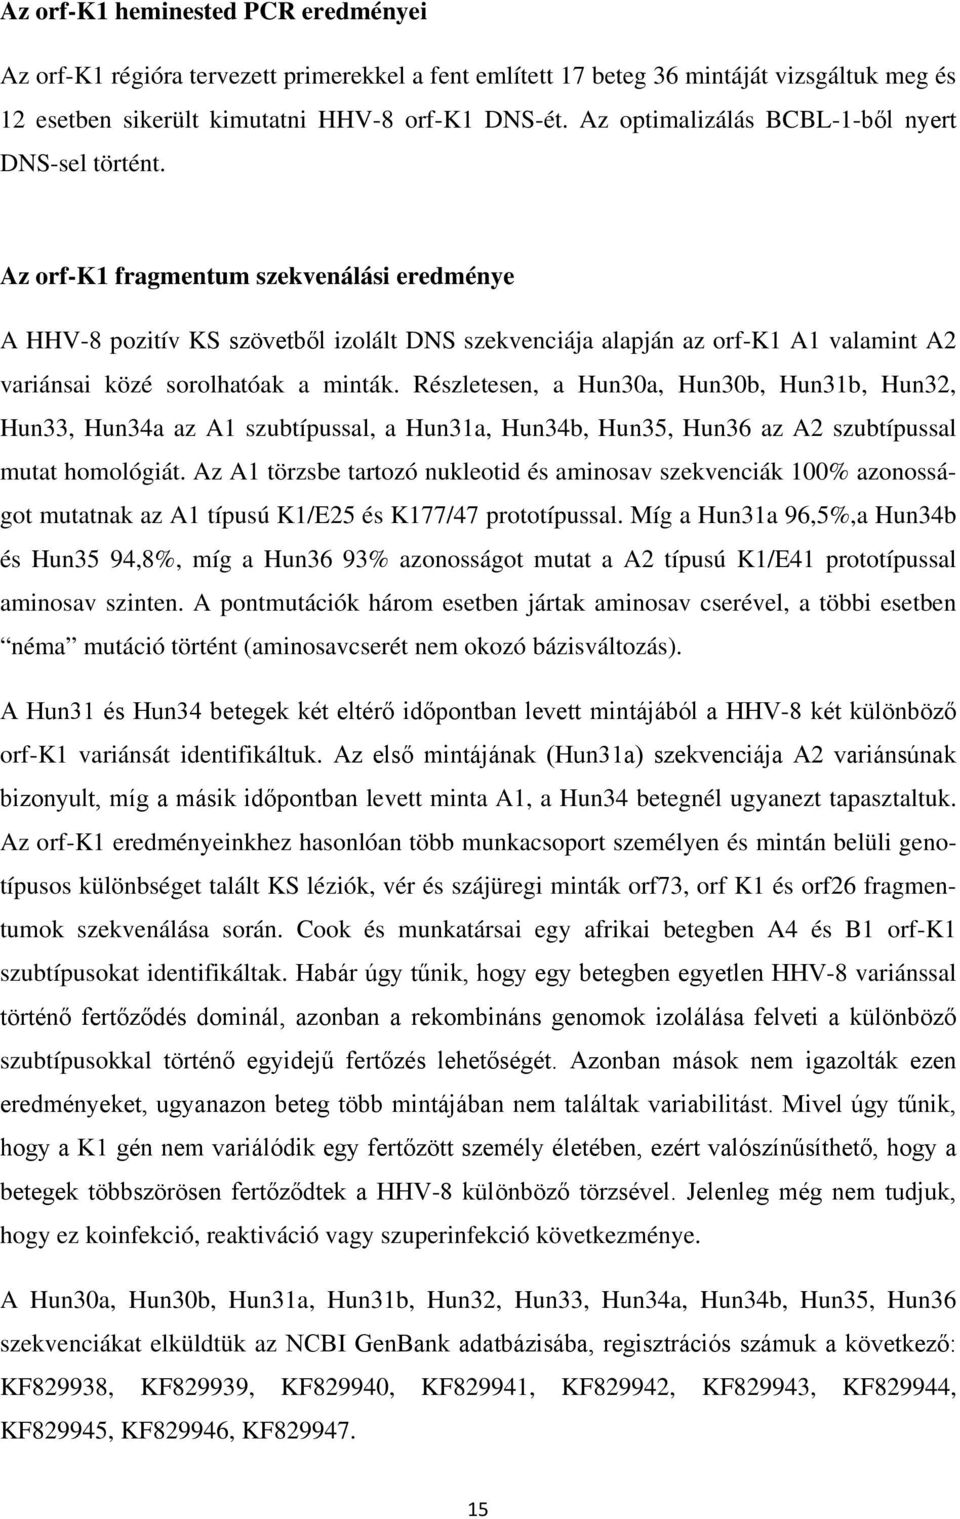 Az orf-k1 fragmentum szekvenálási eredménye A HHV-8 pozitív KS szövetből izolált DNS szekvenciája alapján az orf-k1 A1 valamint A2 variánsai közé sorolhatóak a minták.